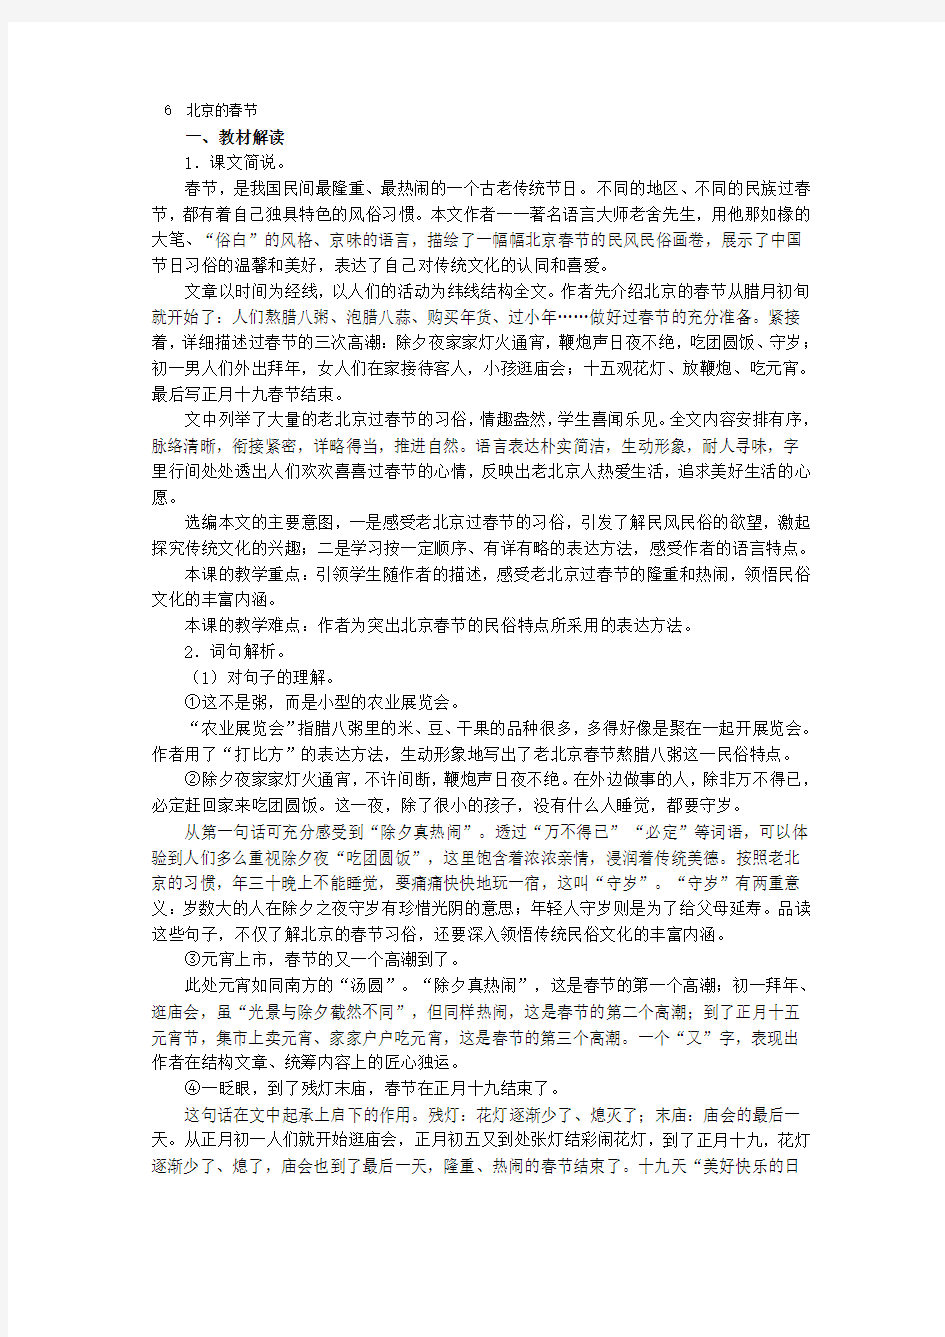 《北京的春节》文本解读